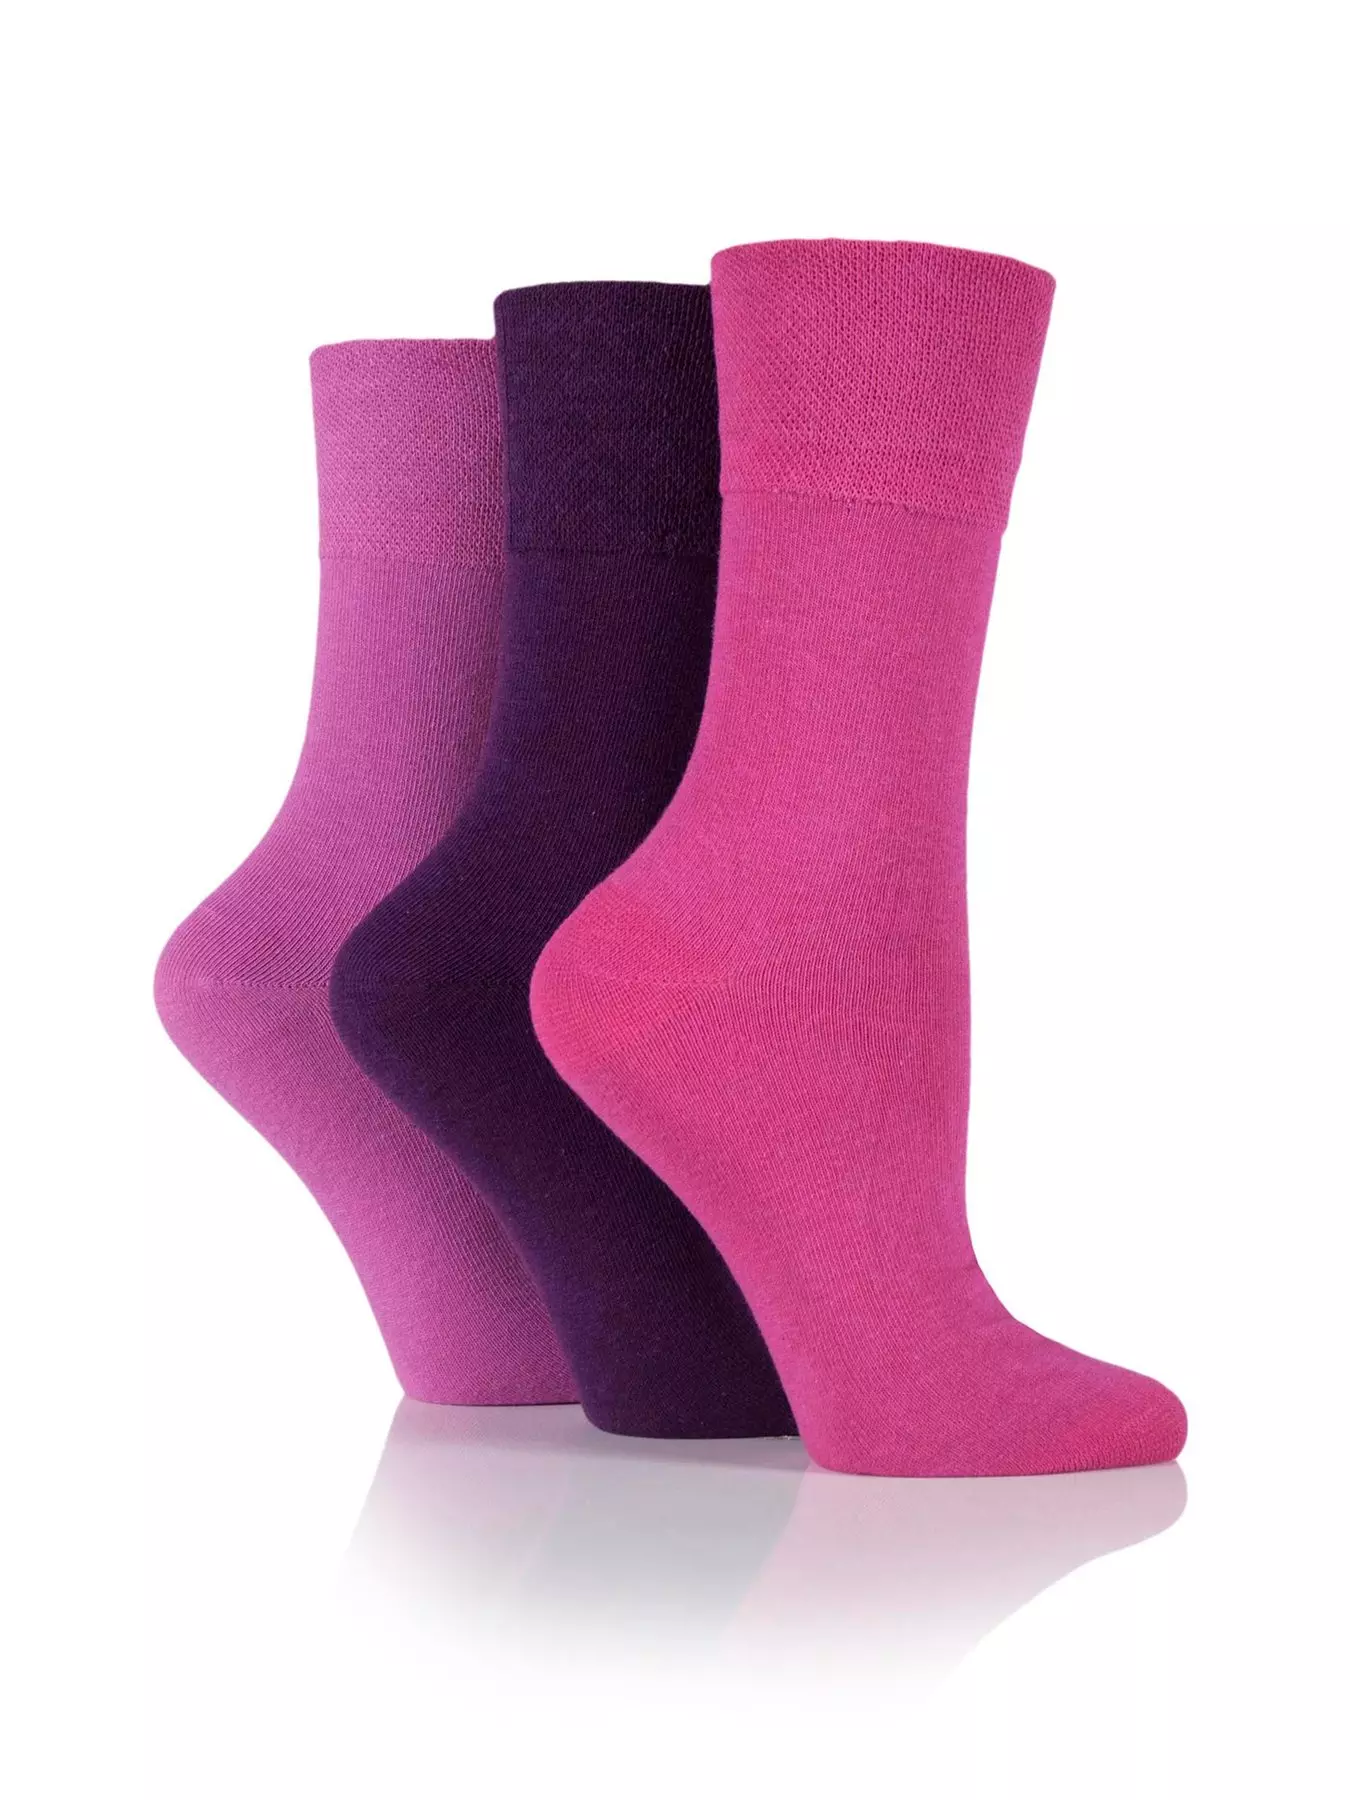 Ladies Gentle Grip Socks Animal Print.